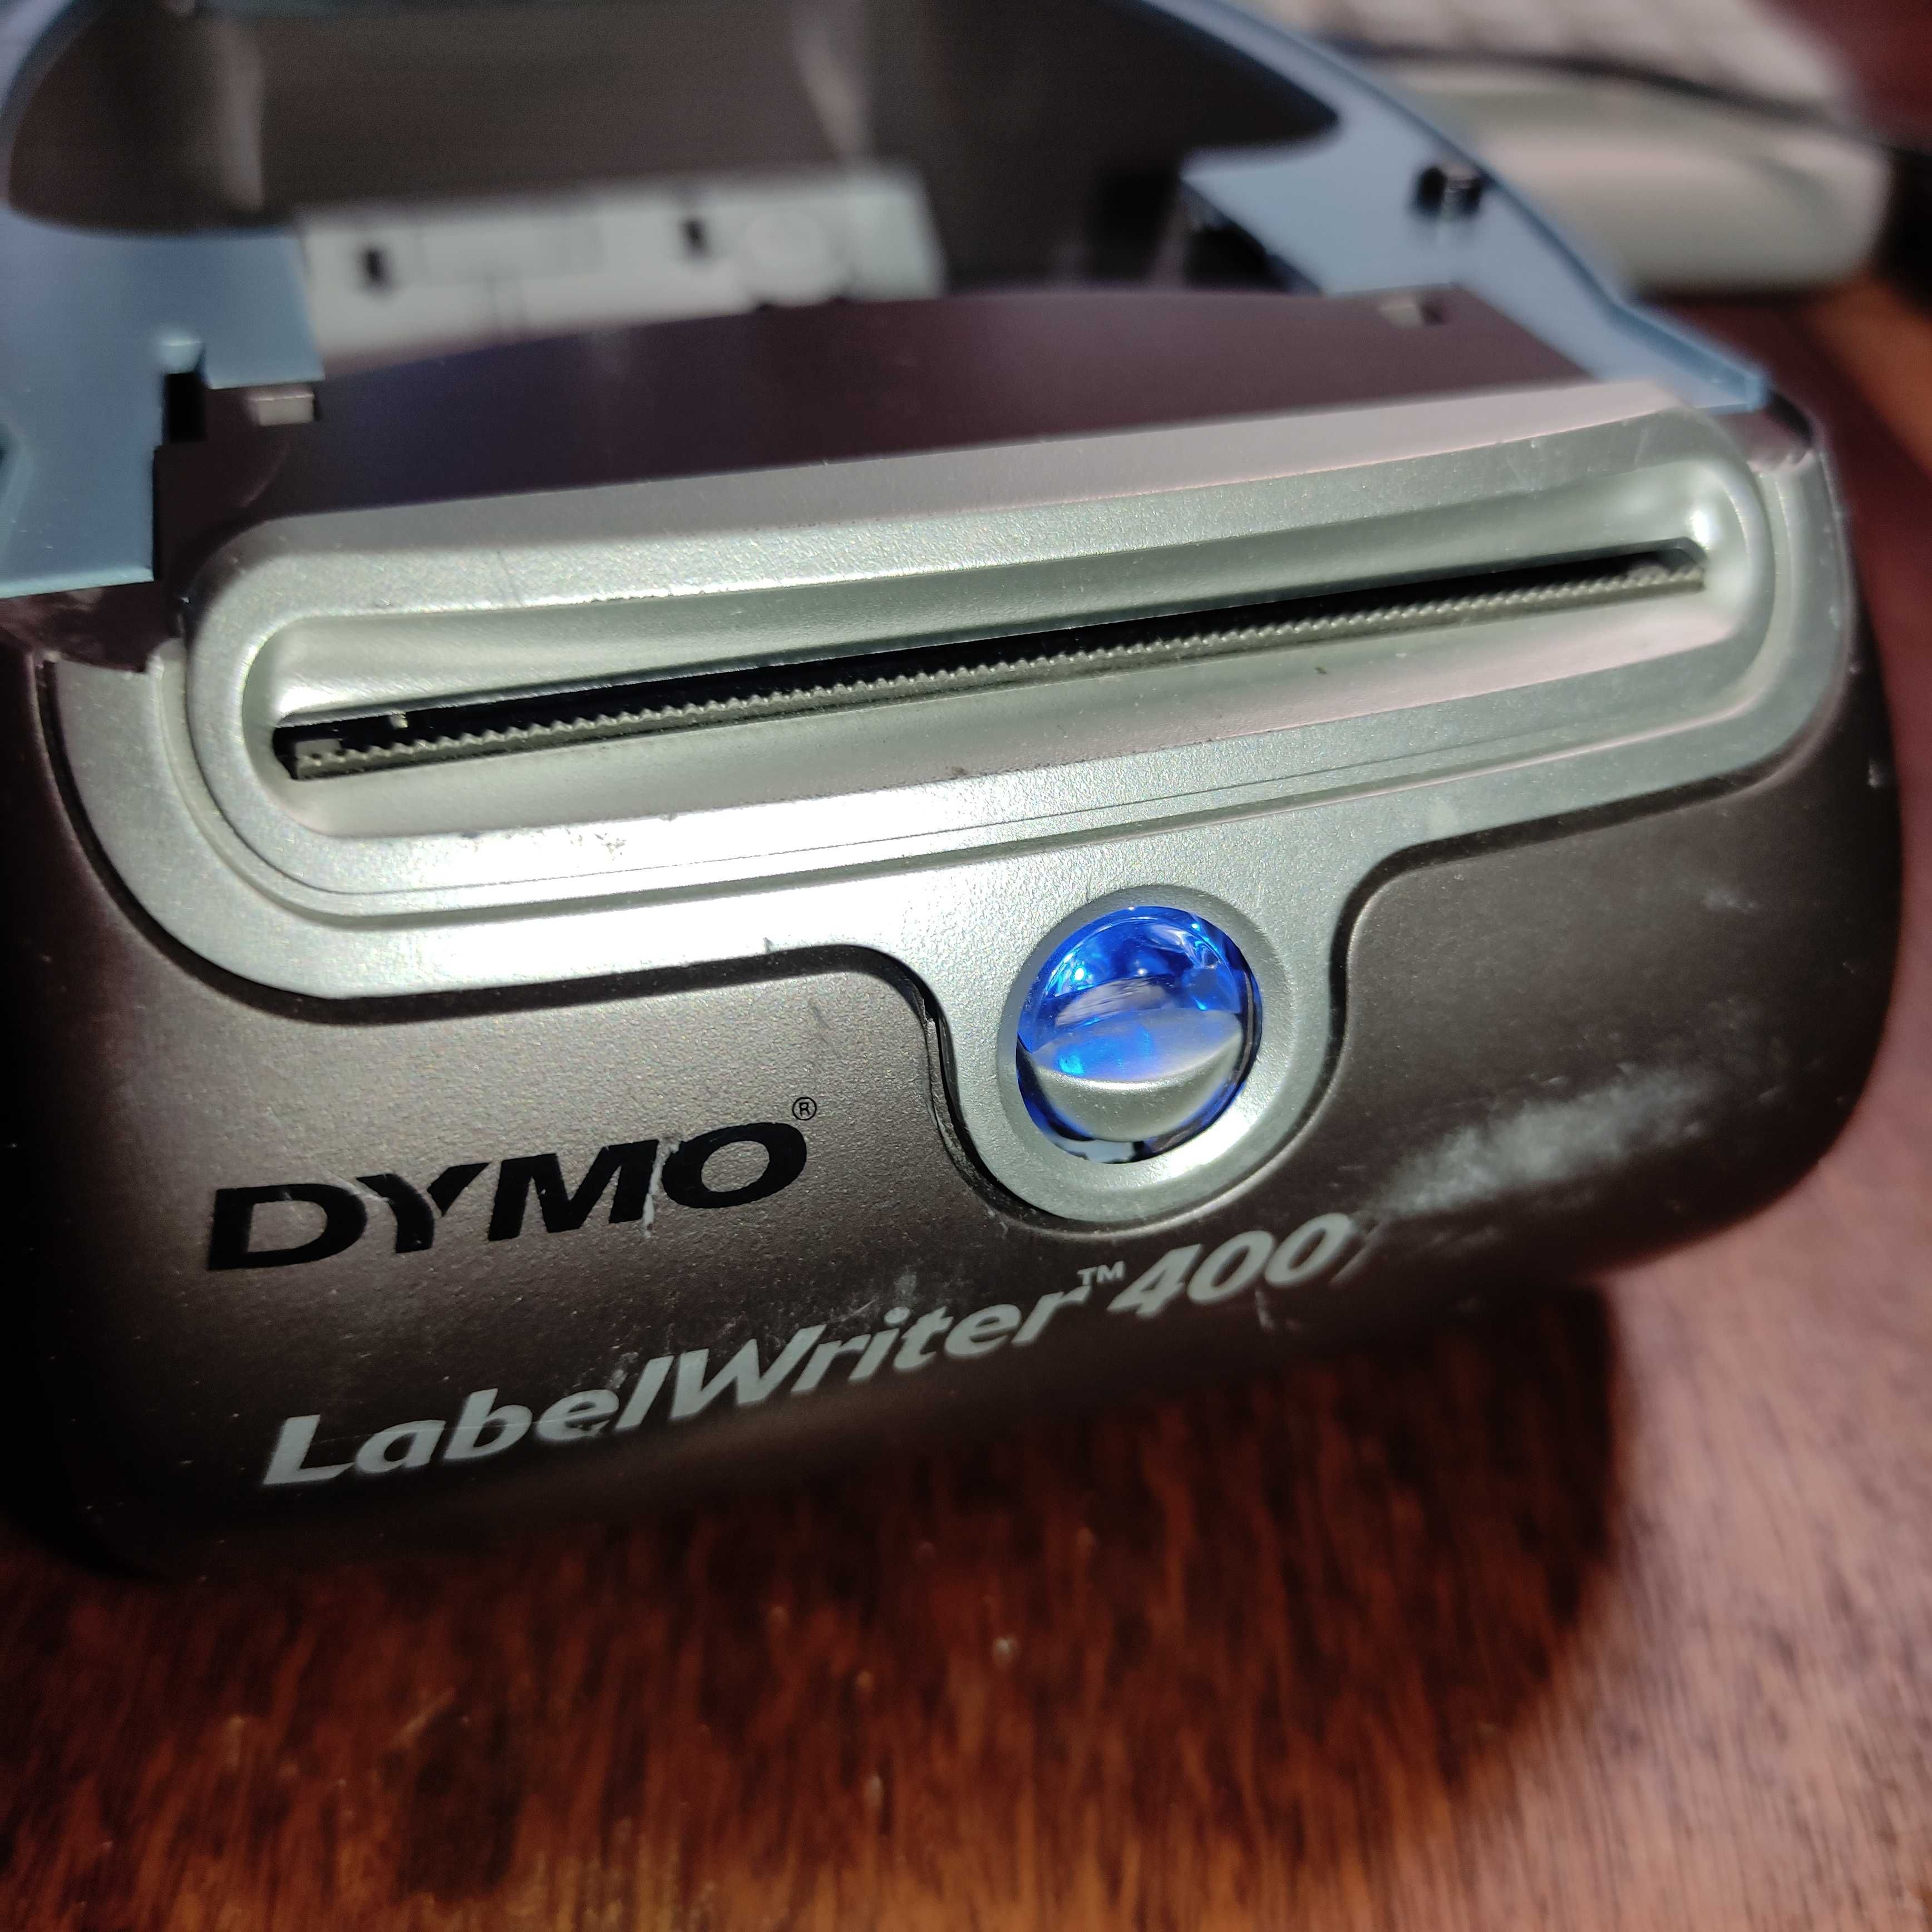 Принтер DYMO LabelWriter 400 для печати этикеток